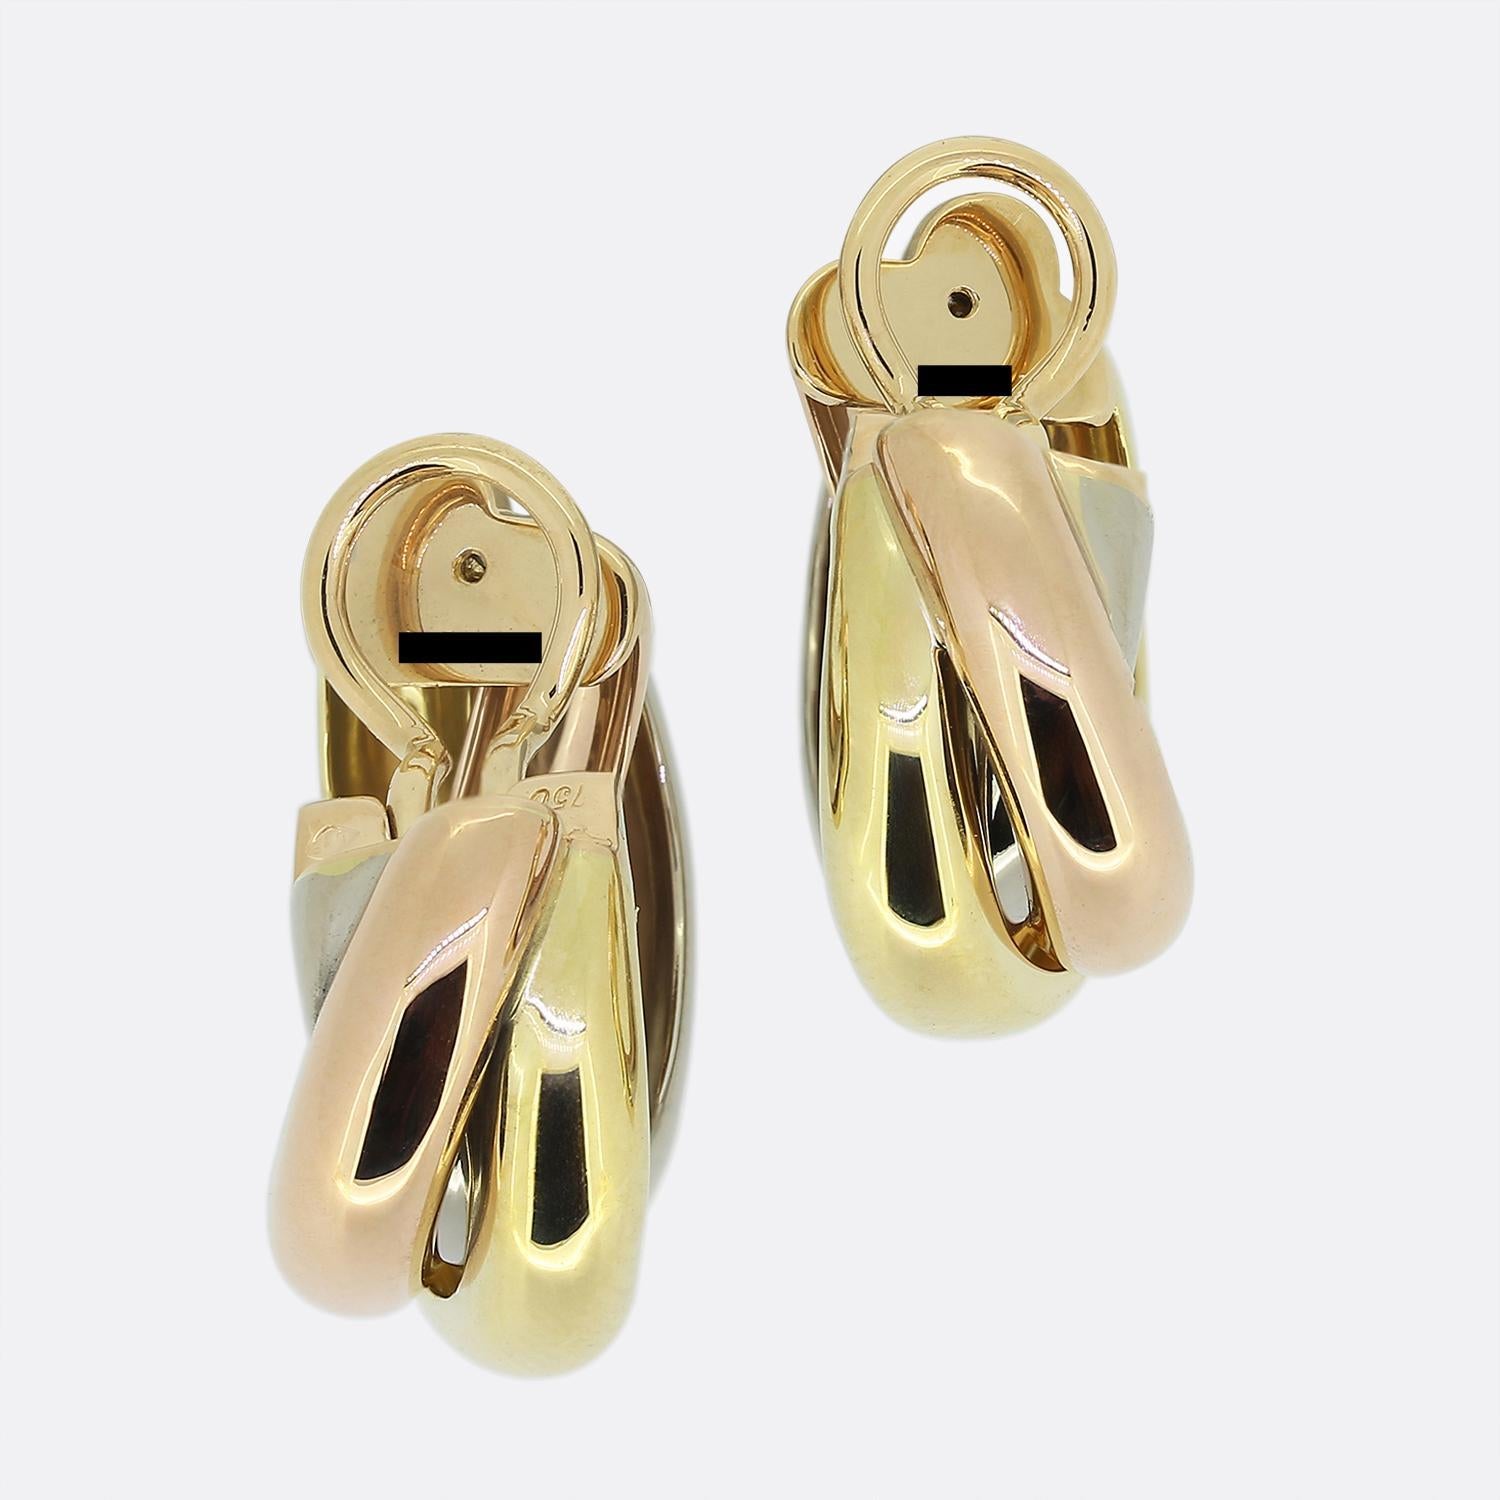 Hier haben wir ein ikonisches Paar Bügelohrringe aus dem Luxusschmuckhaus Cartier. Jeder Ohrring besteht aus drei kontrastierenden Barren aus 18-karätigem Gold, die ineinander verschlungen sind und eine glatte, polierte Oberfläche aufweisen.